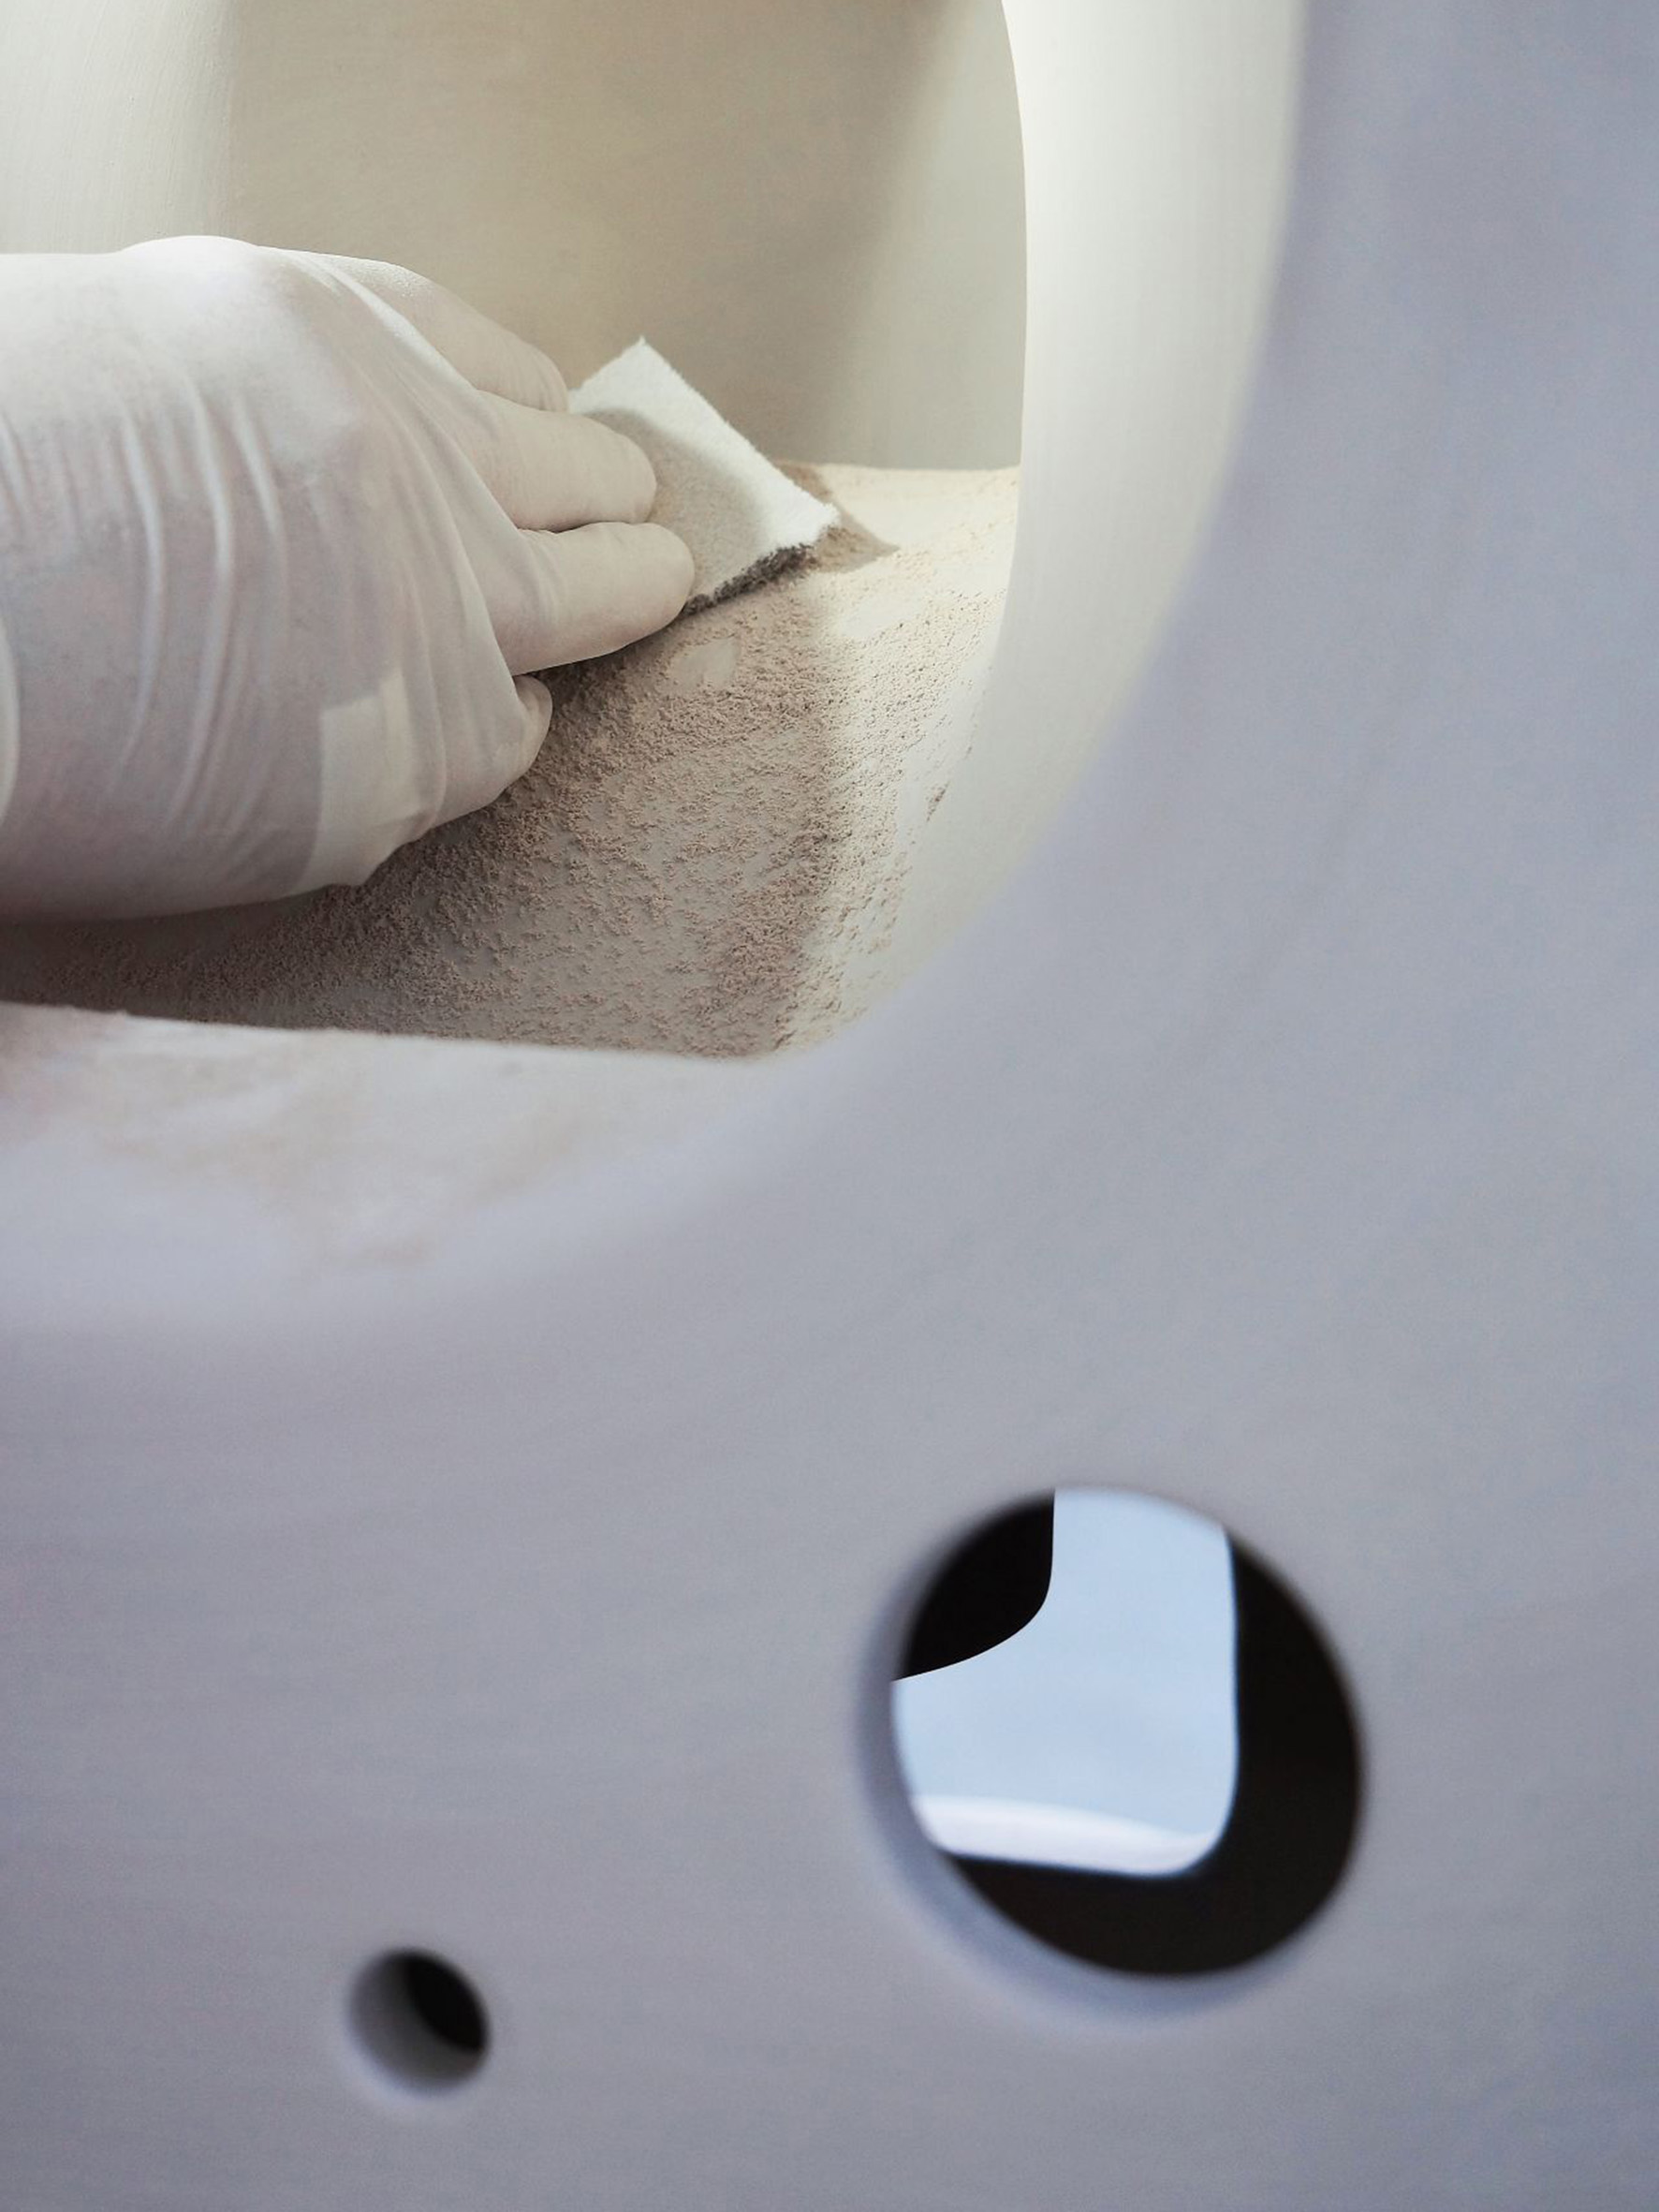 Keramische Toilette vor der Ausbrennung und Hand in Plastik Hanschuhen